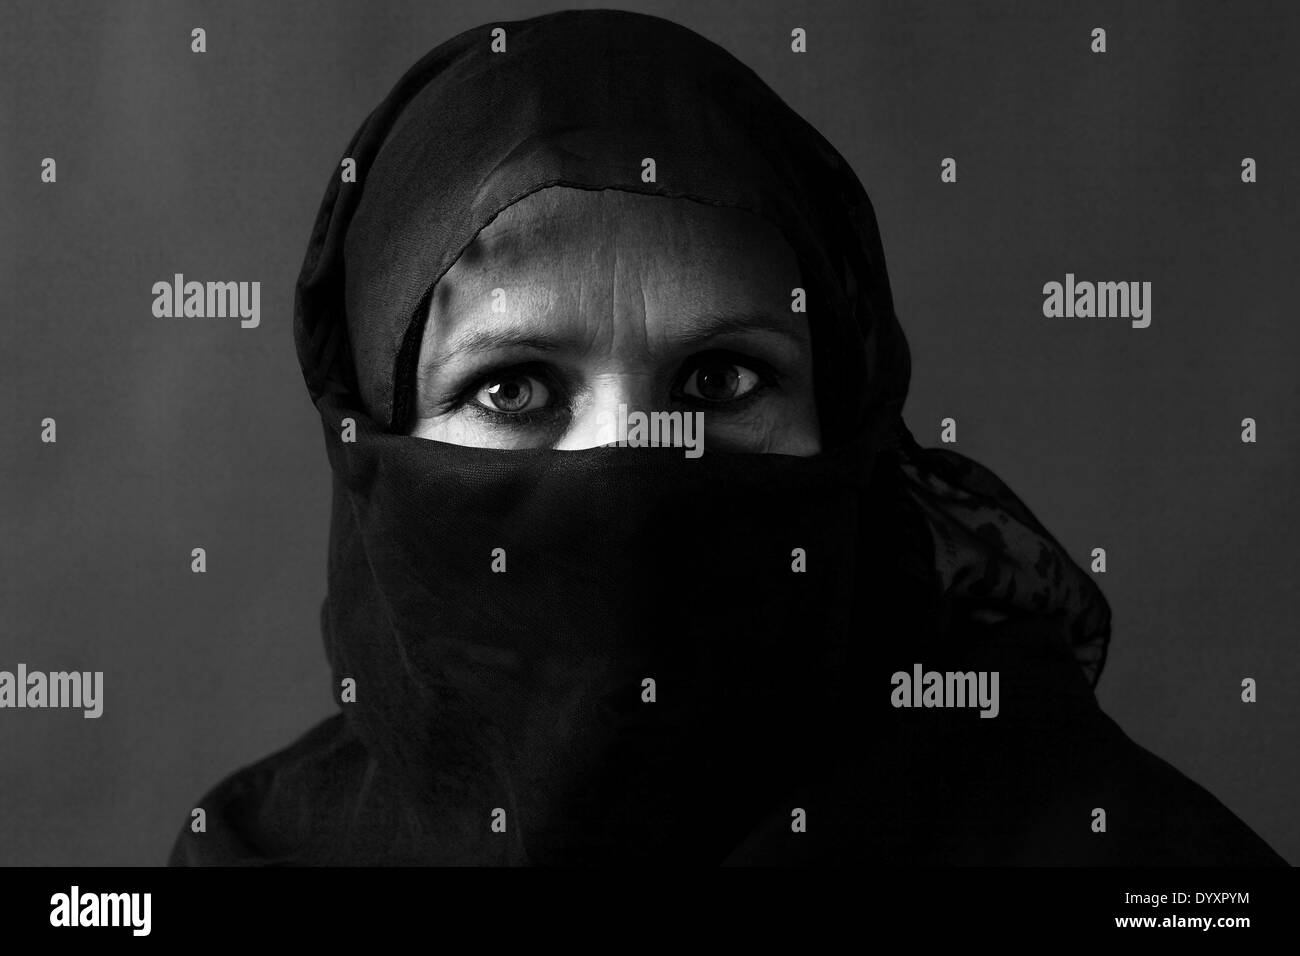 Dramatische schwarz / weiss Portrait von eine verschleierte muslimische Frau mittleren Alters mit starken Blick Stockfoto